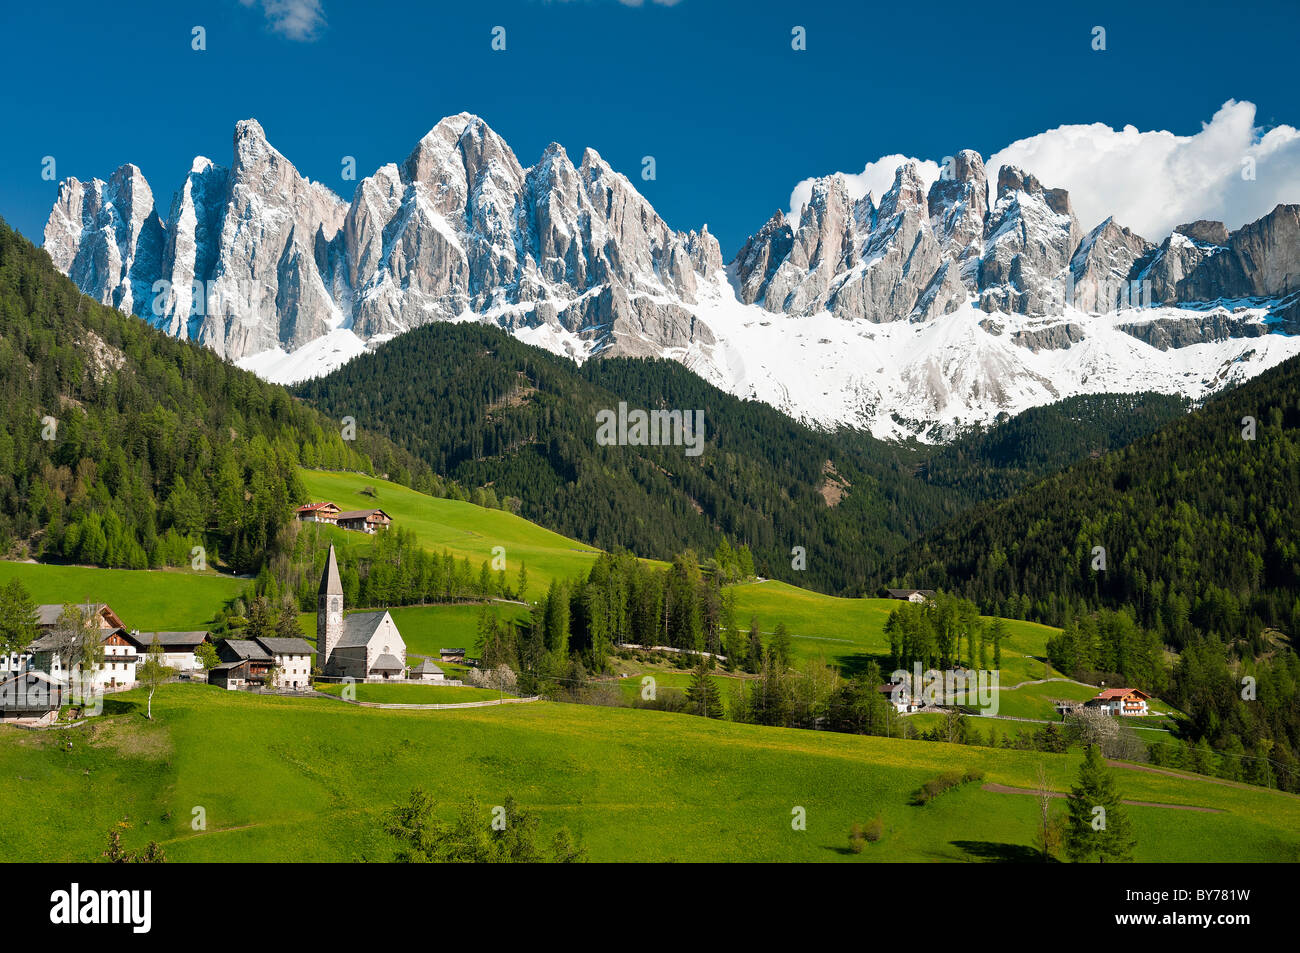 Malerische Aussicht des Villnösser Tales mit schneebedeckten Dolomiten Geisler, Alto Adige - Südtirol, Italien Stockfoto